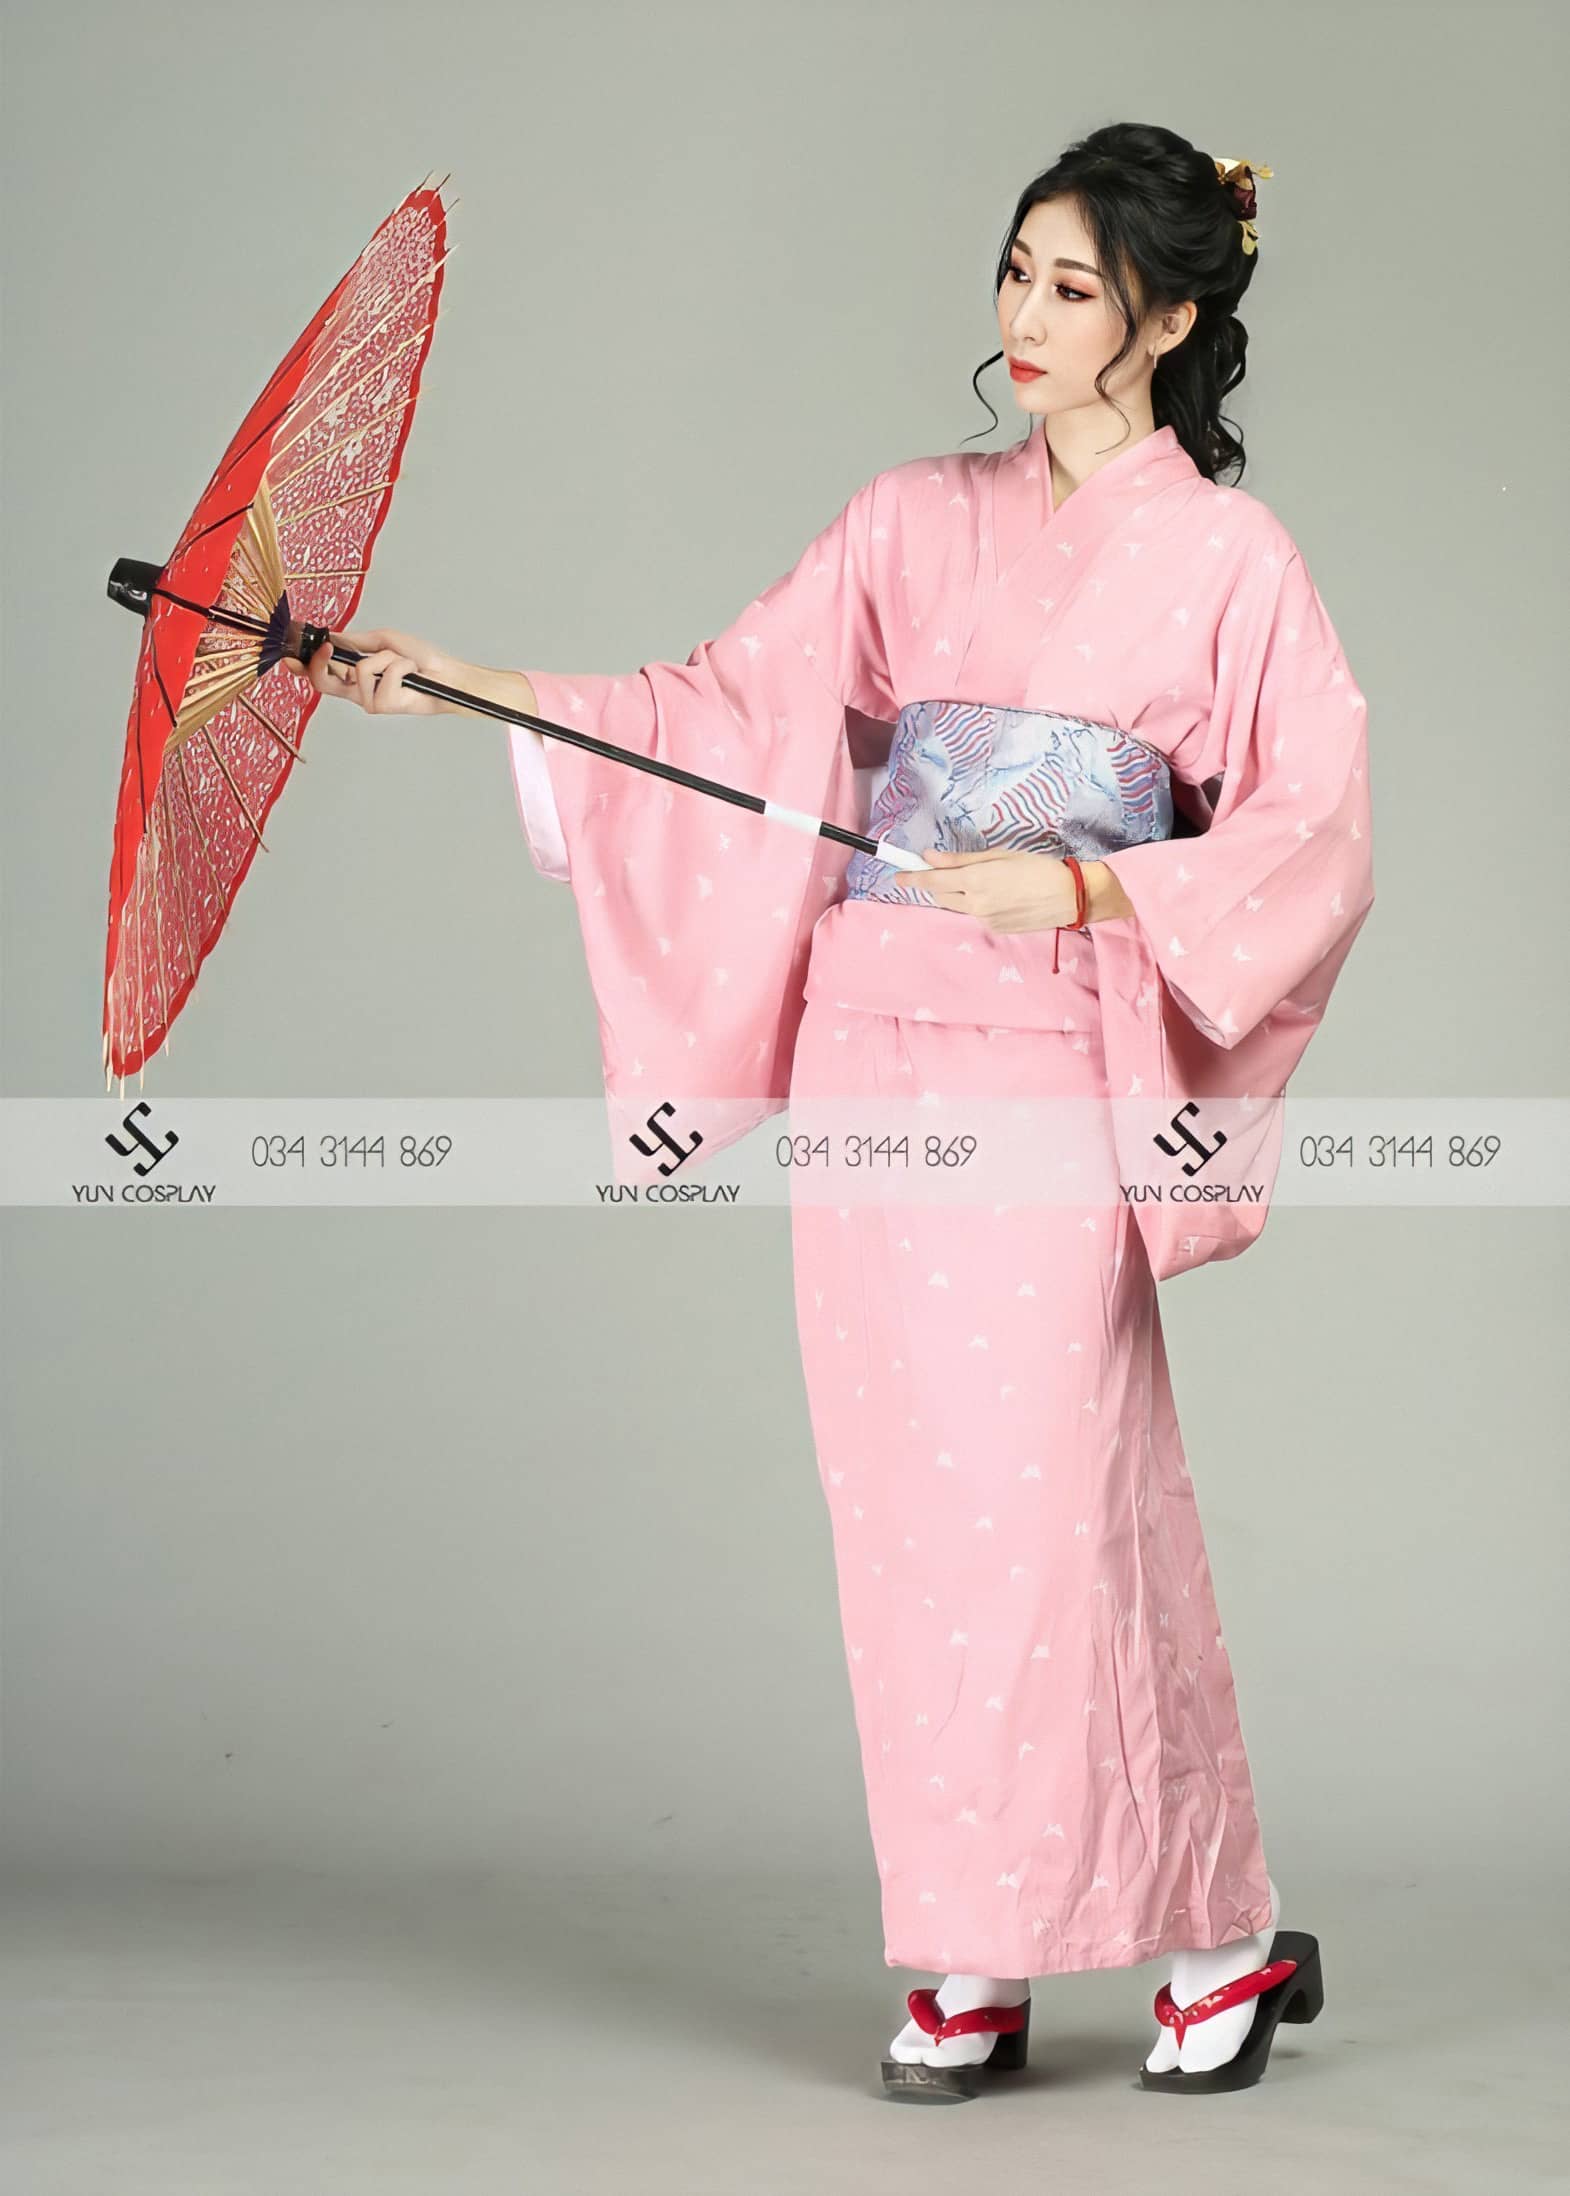 Những chiếc kimono truyền thống của Nhật Bản luôn là một trong những điểm nhấn đặc biệt trong các bộ ảnh cưới. Với sắc đỏ đặc trưng và kiểu dáng sang trọng, kimono là lựa chọn tuyệt vời cho bộ ảnh cưới đầy màu sắc và tinh tế.